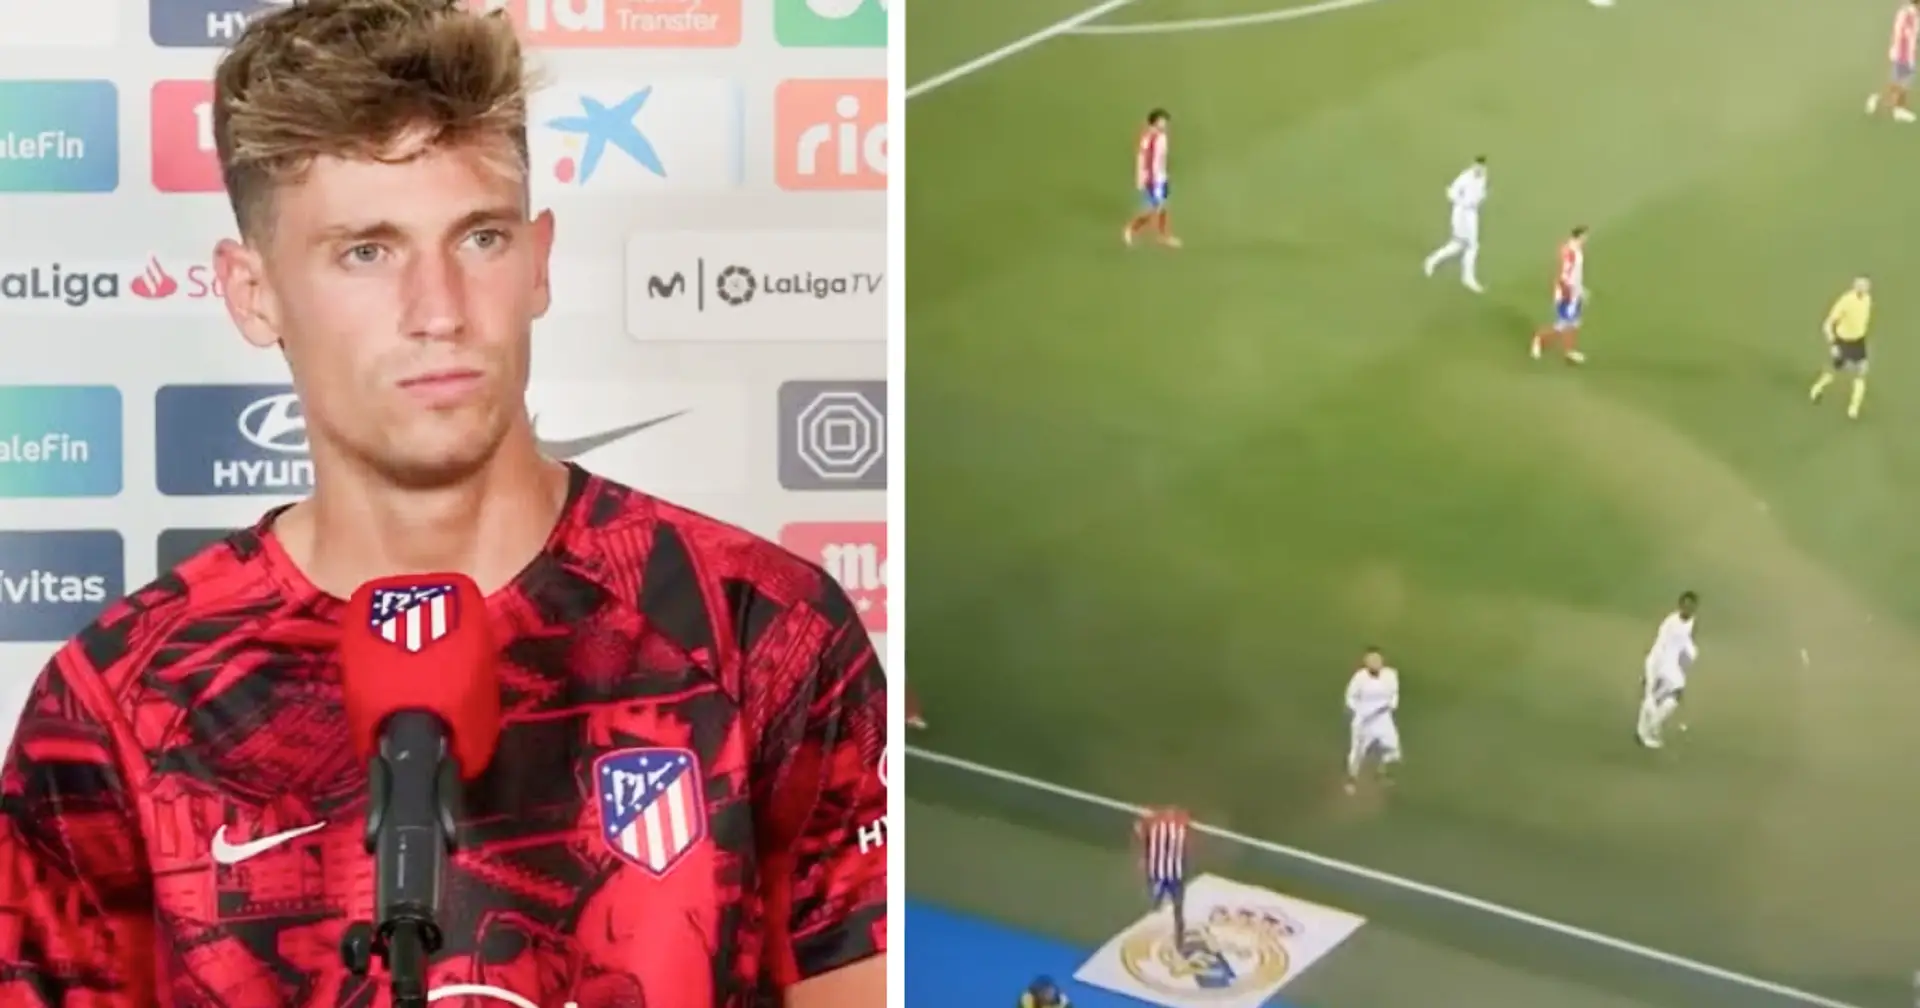 Visto: El goleador del Atlético le falta el respeto al Real Madrid con un gesto en el derbi